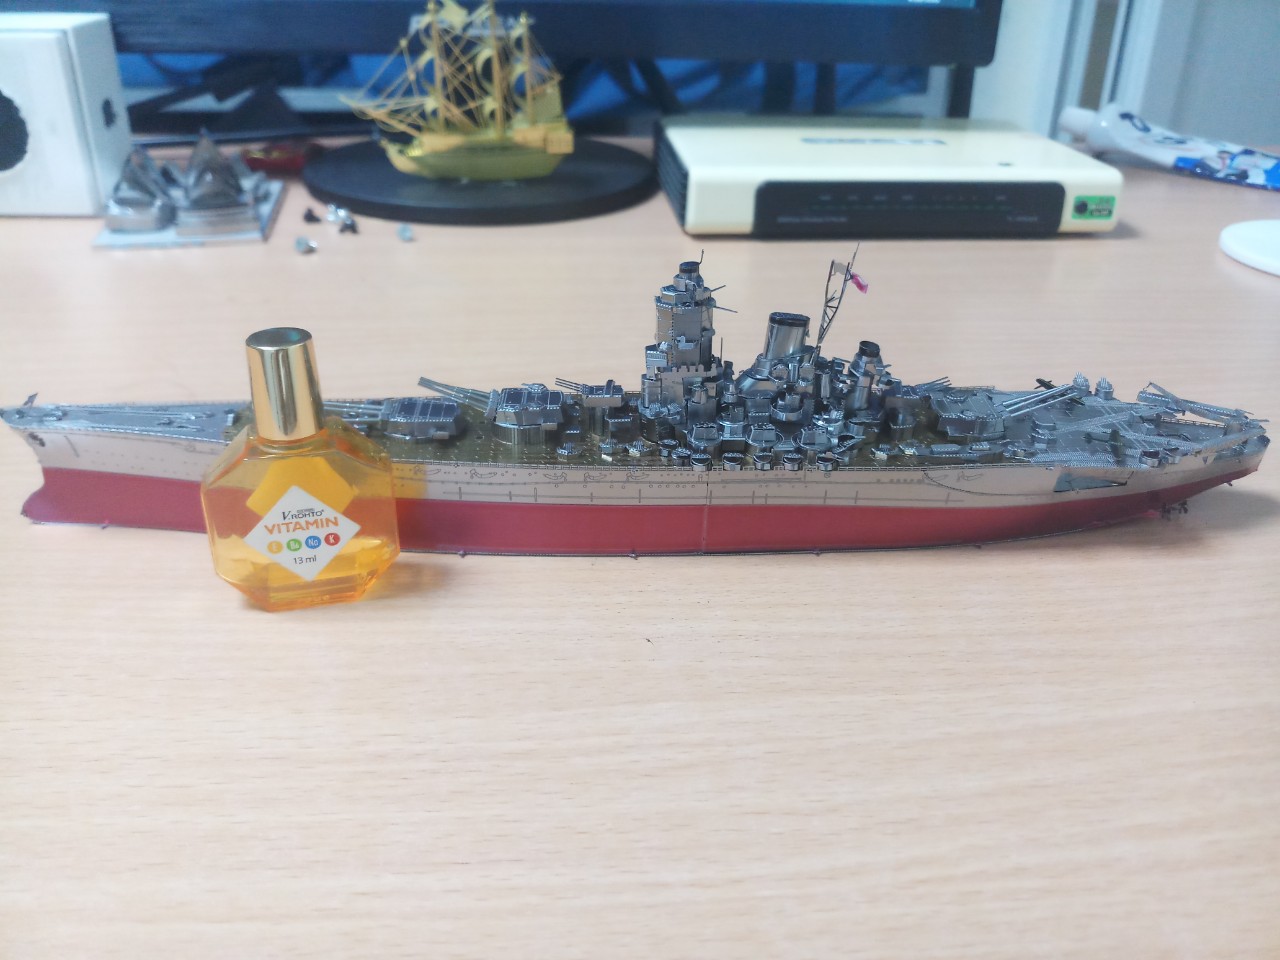 Tổng hợp Mô Hình Chiến Hạm Yamato giá rẻ bán chạy tháng 82023  BeeCost